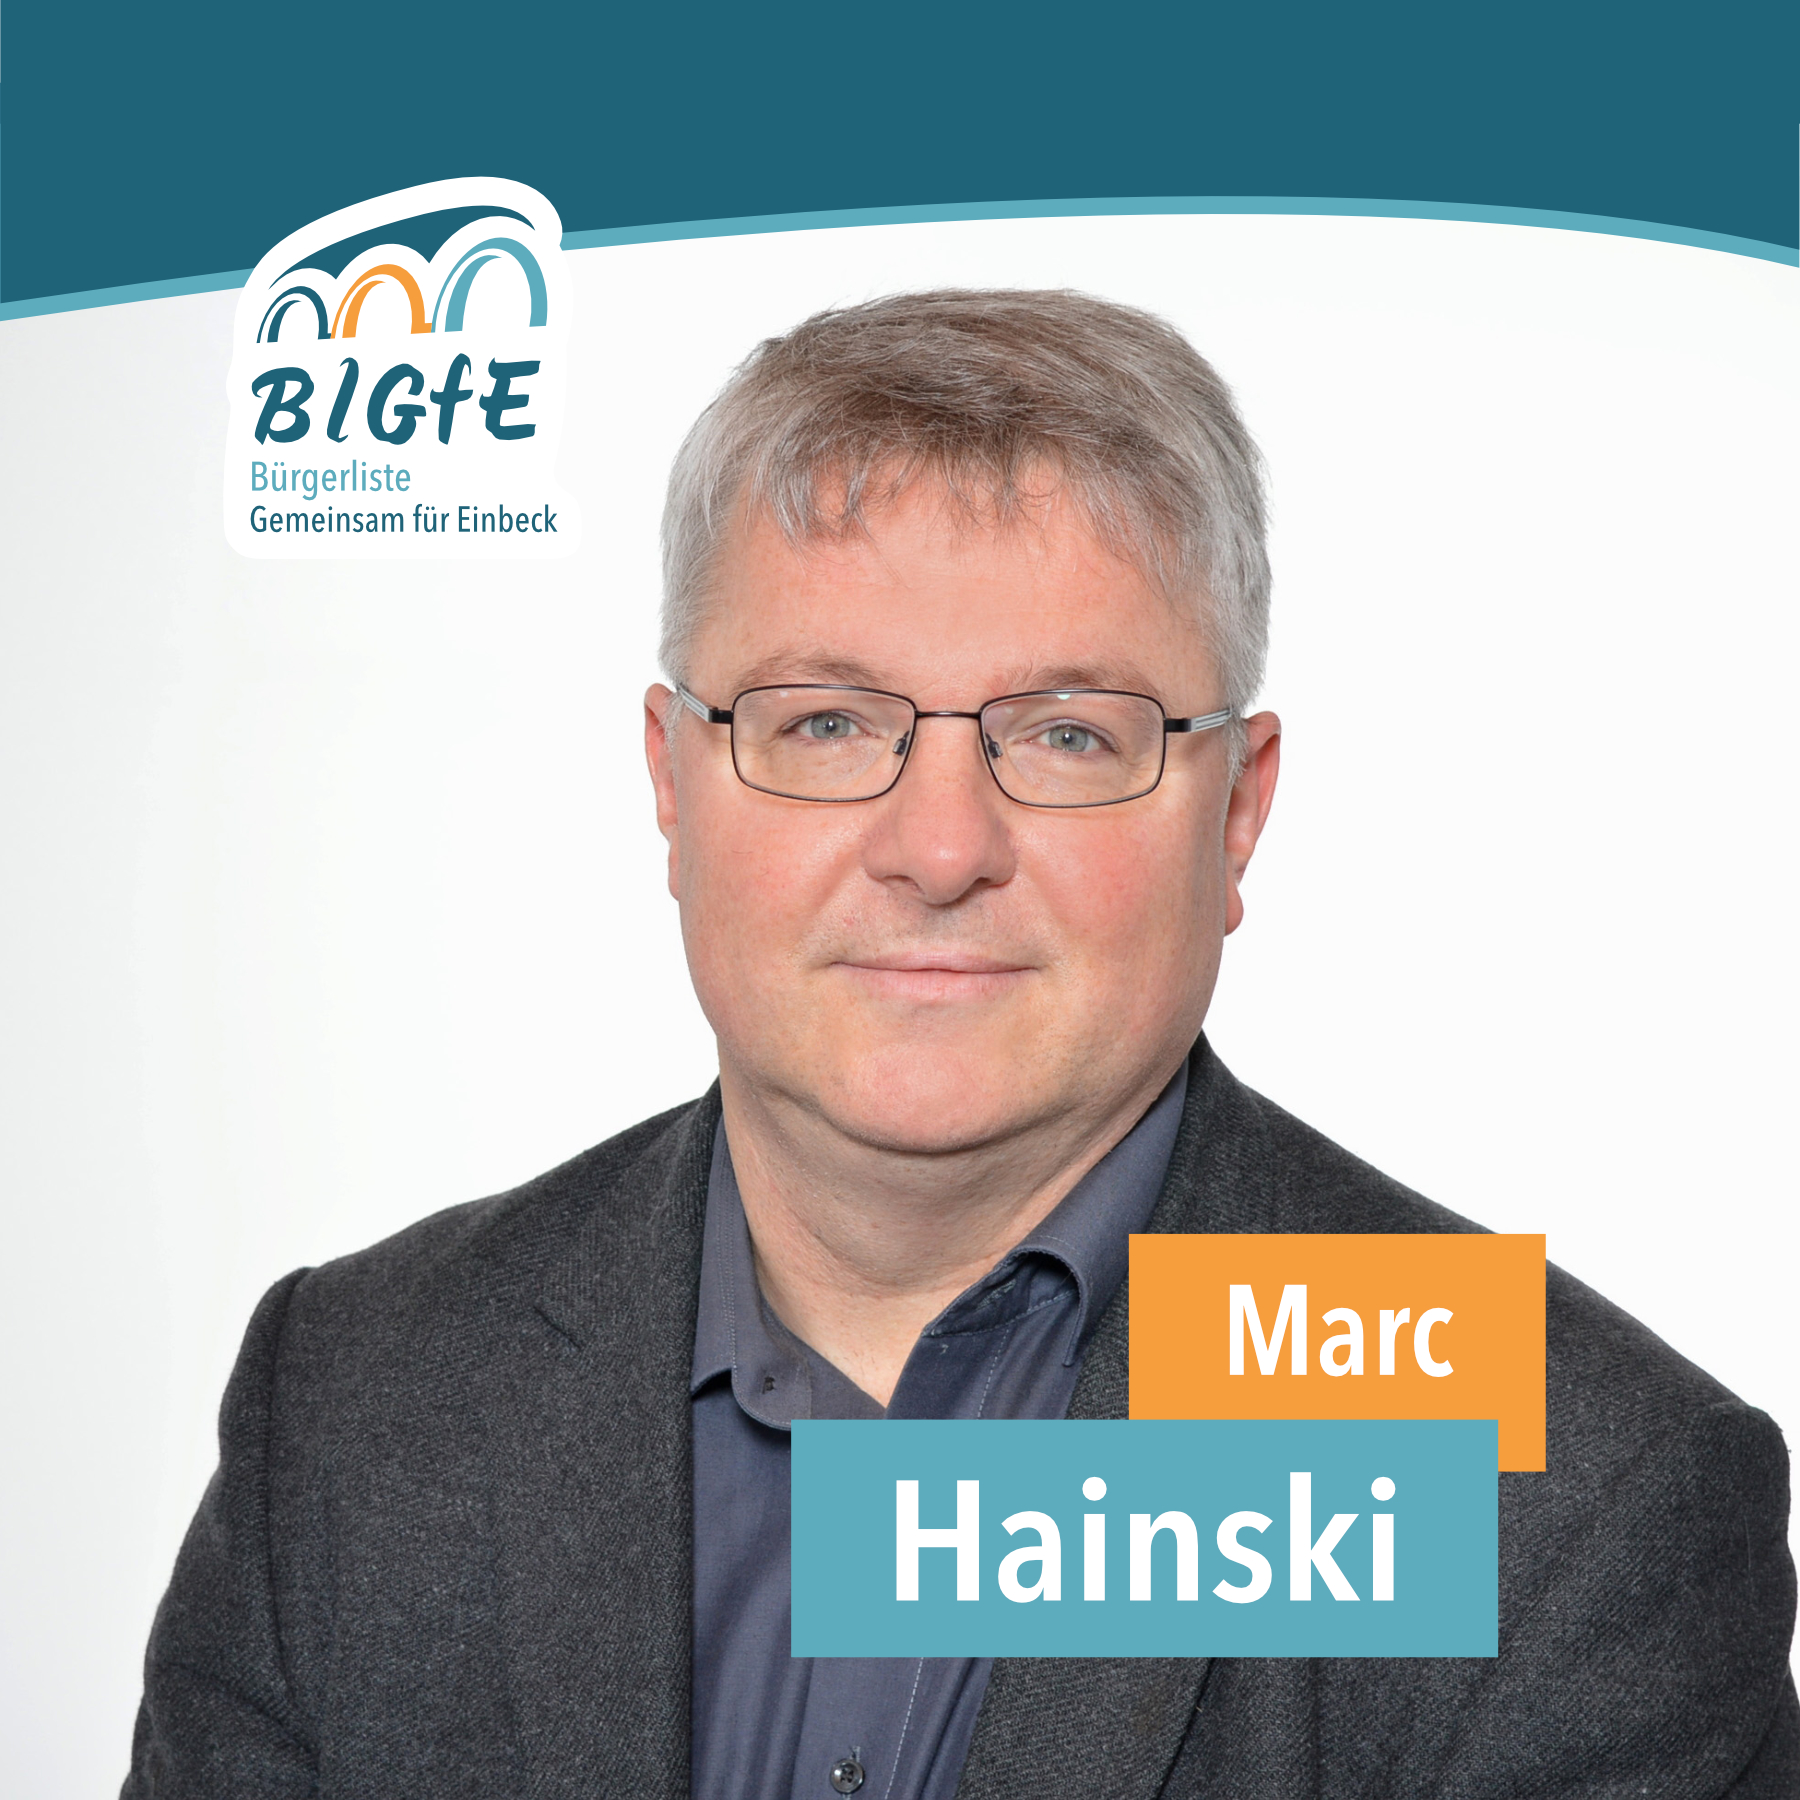 Marc Hainski